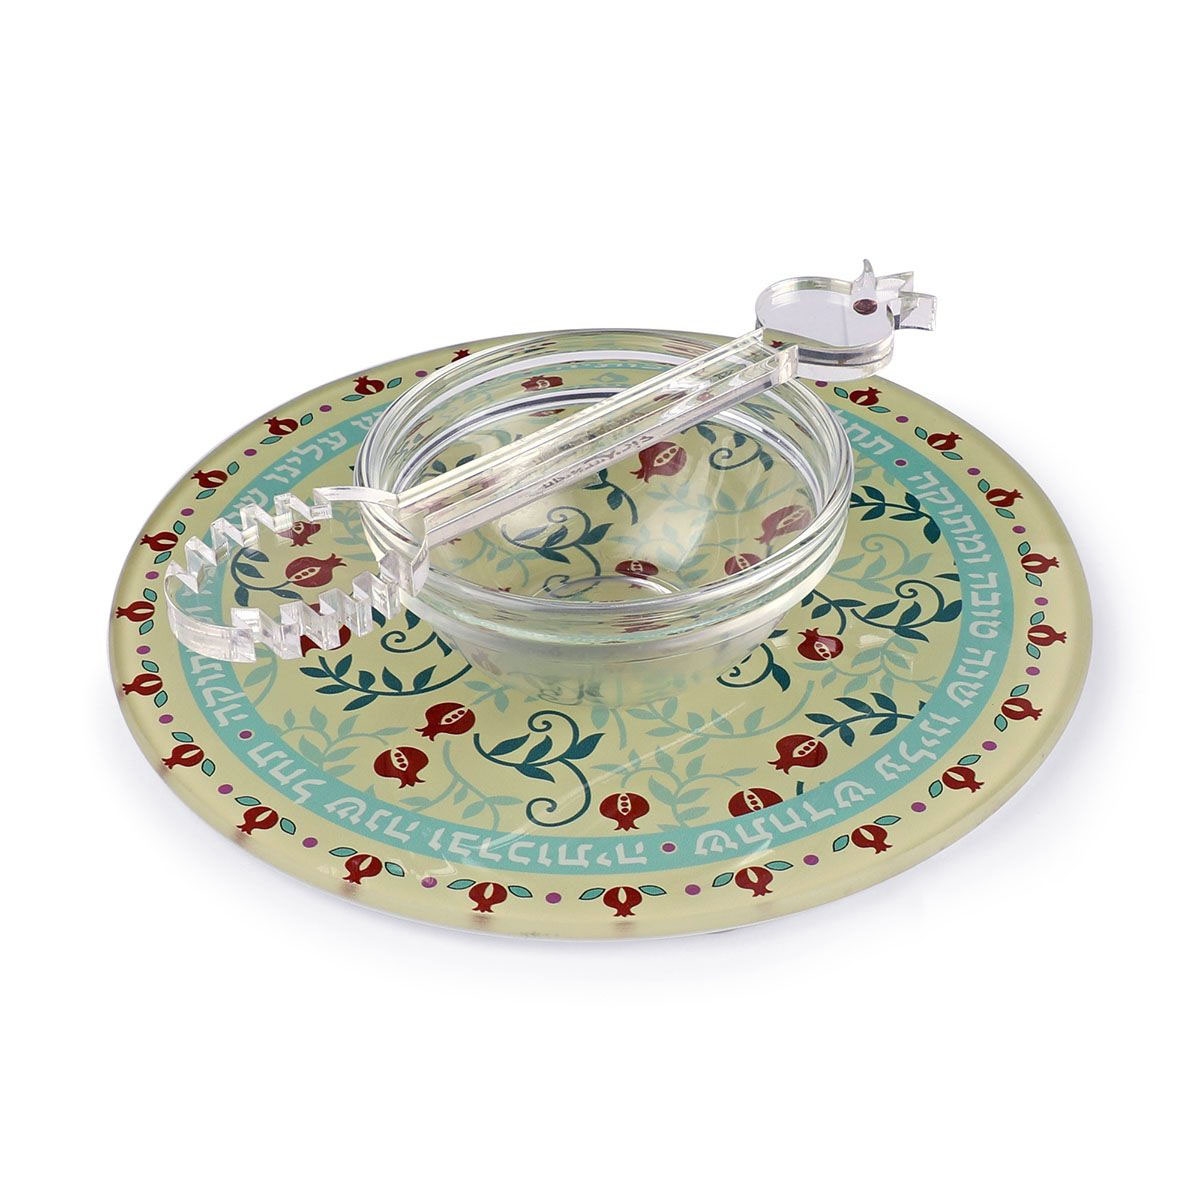 Dorit Judaica Rosh Hashanah Pomegranate Glass Plate and Honey Dish Set - 1